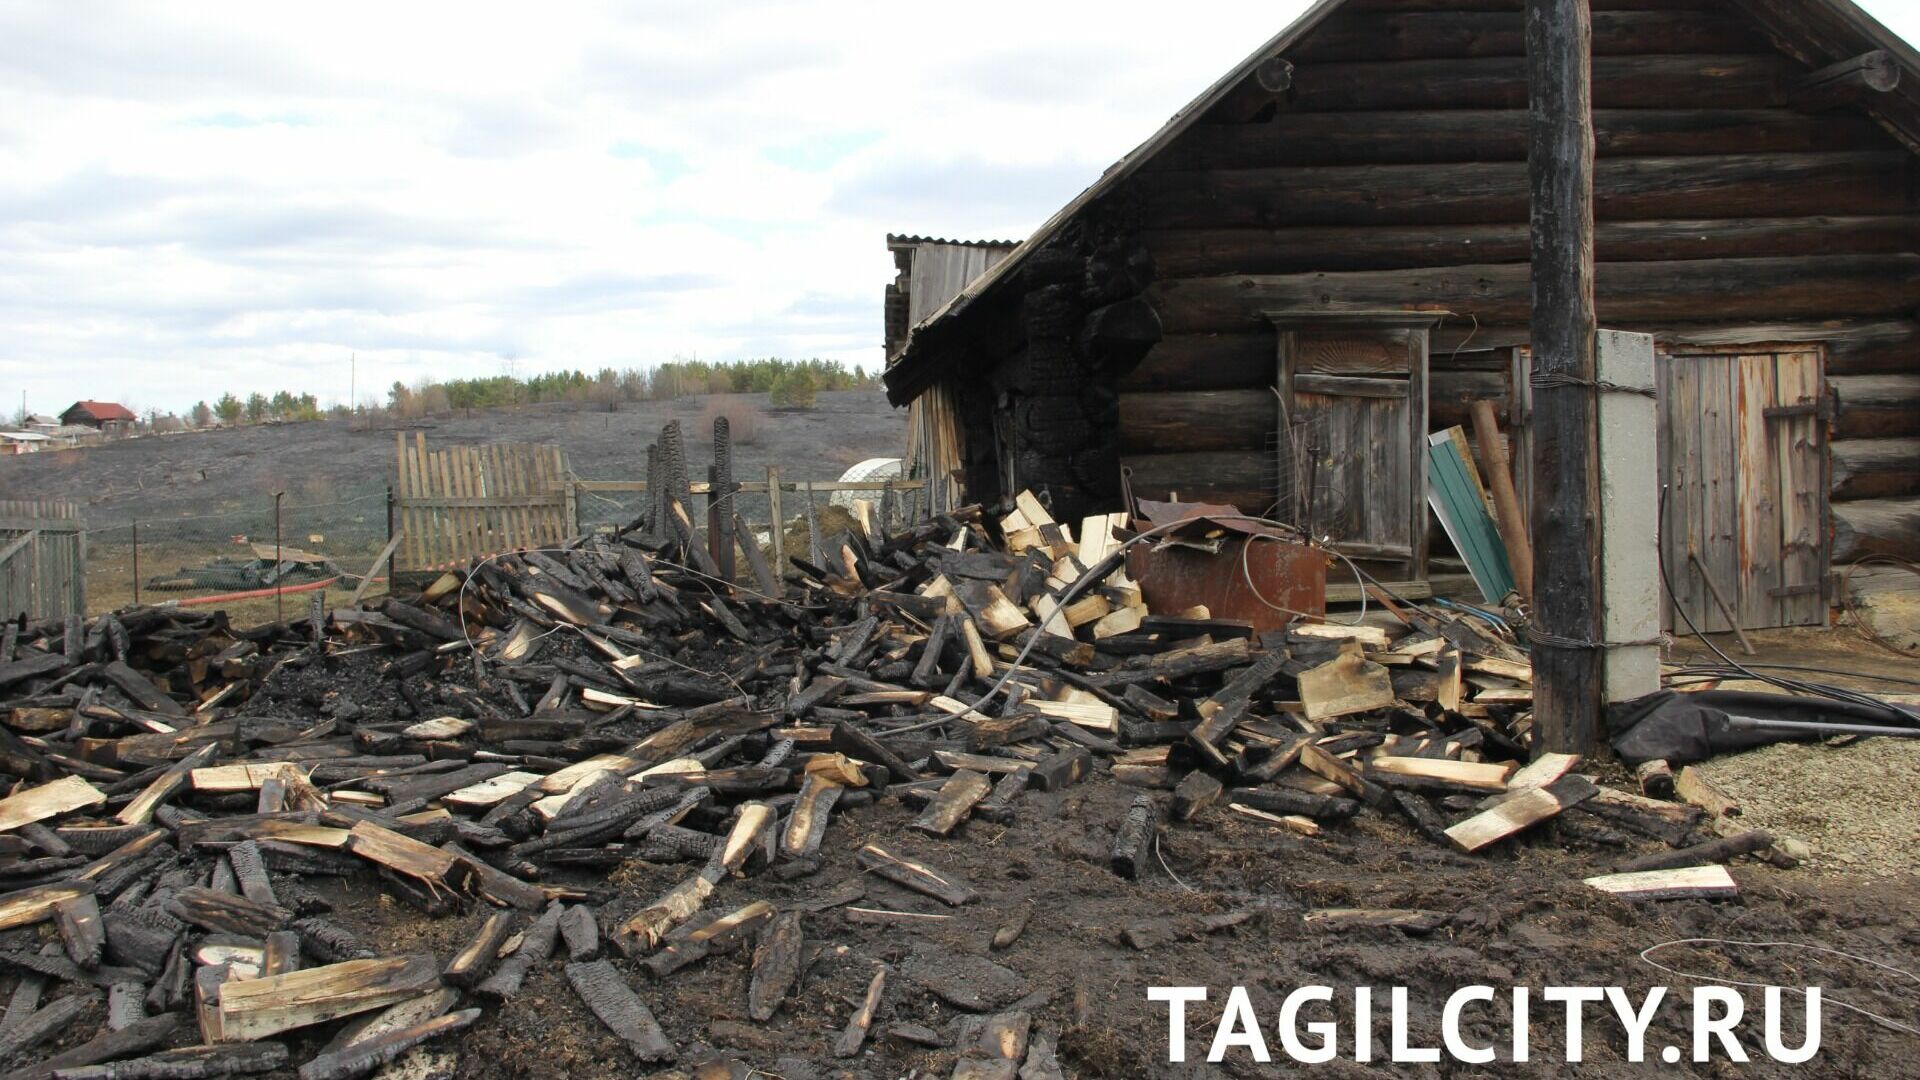 Дача за маткапитал сгорела у семьи из Нижнего Тагила в массовом пожаре в Бызово